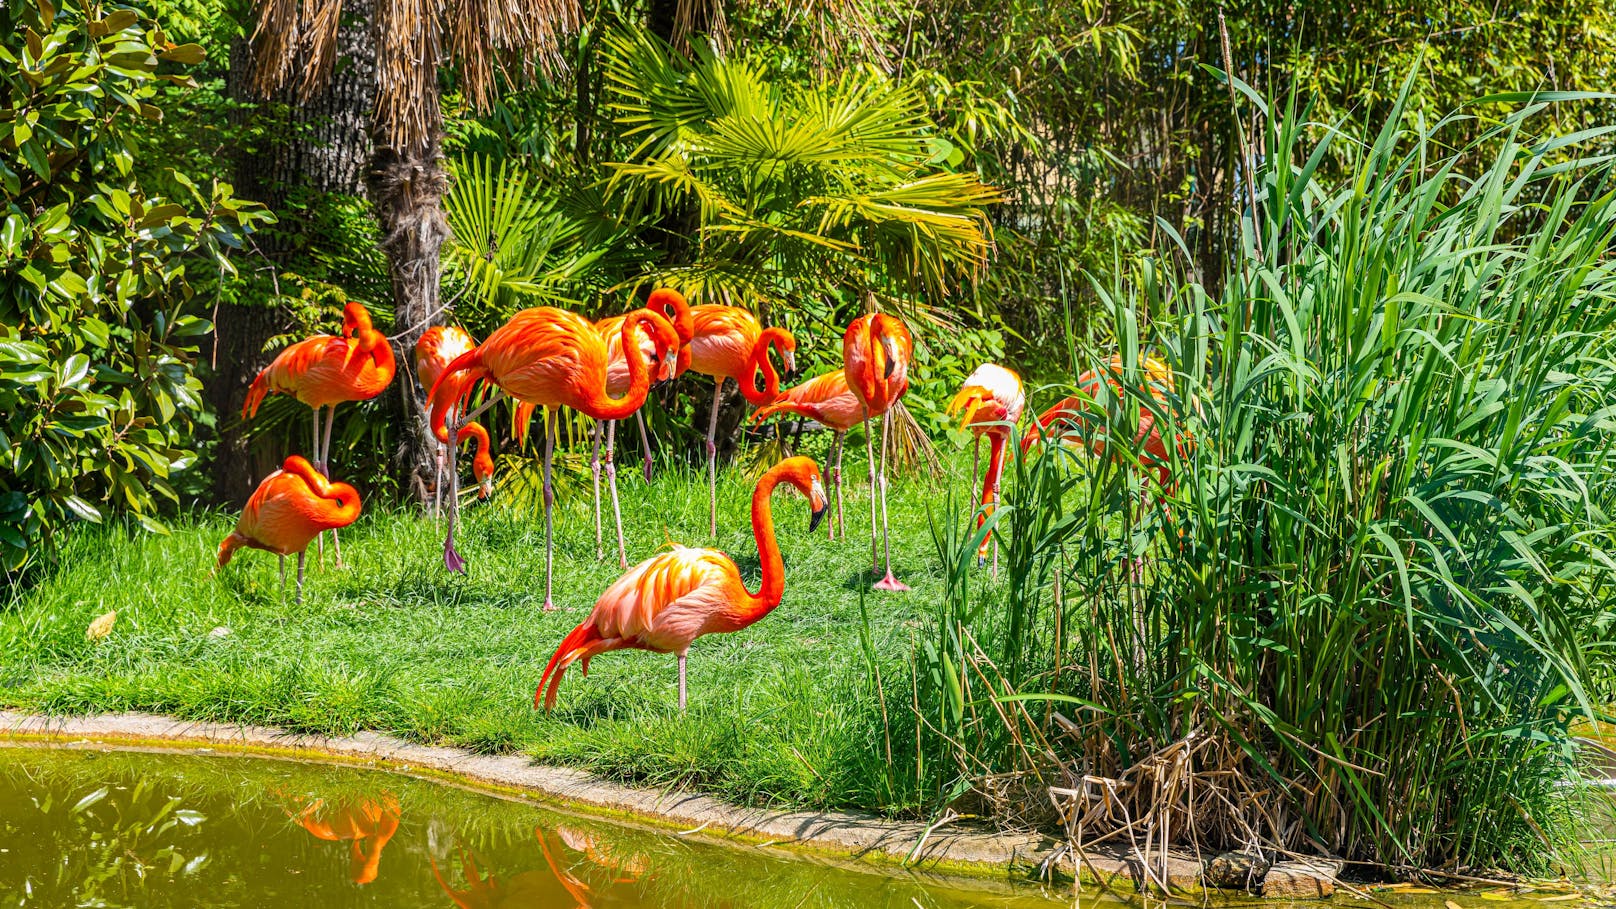 Fuchs tötete 13 Flamingos im Tiergarten Schönbrunn